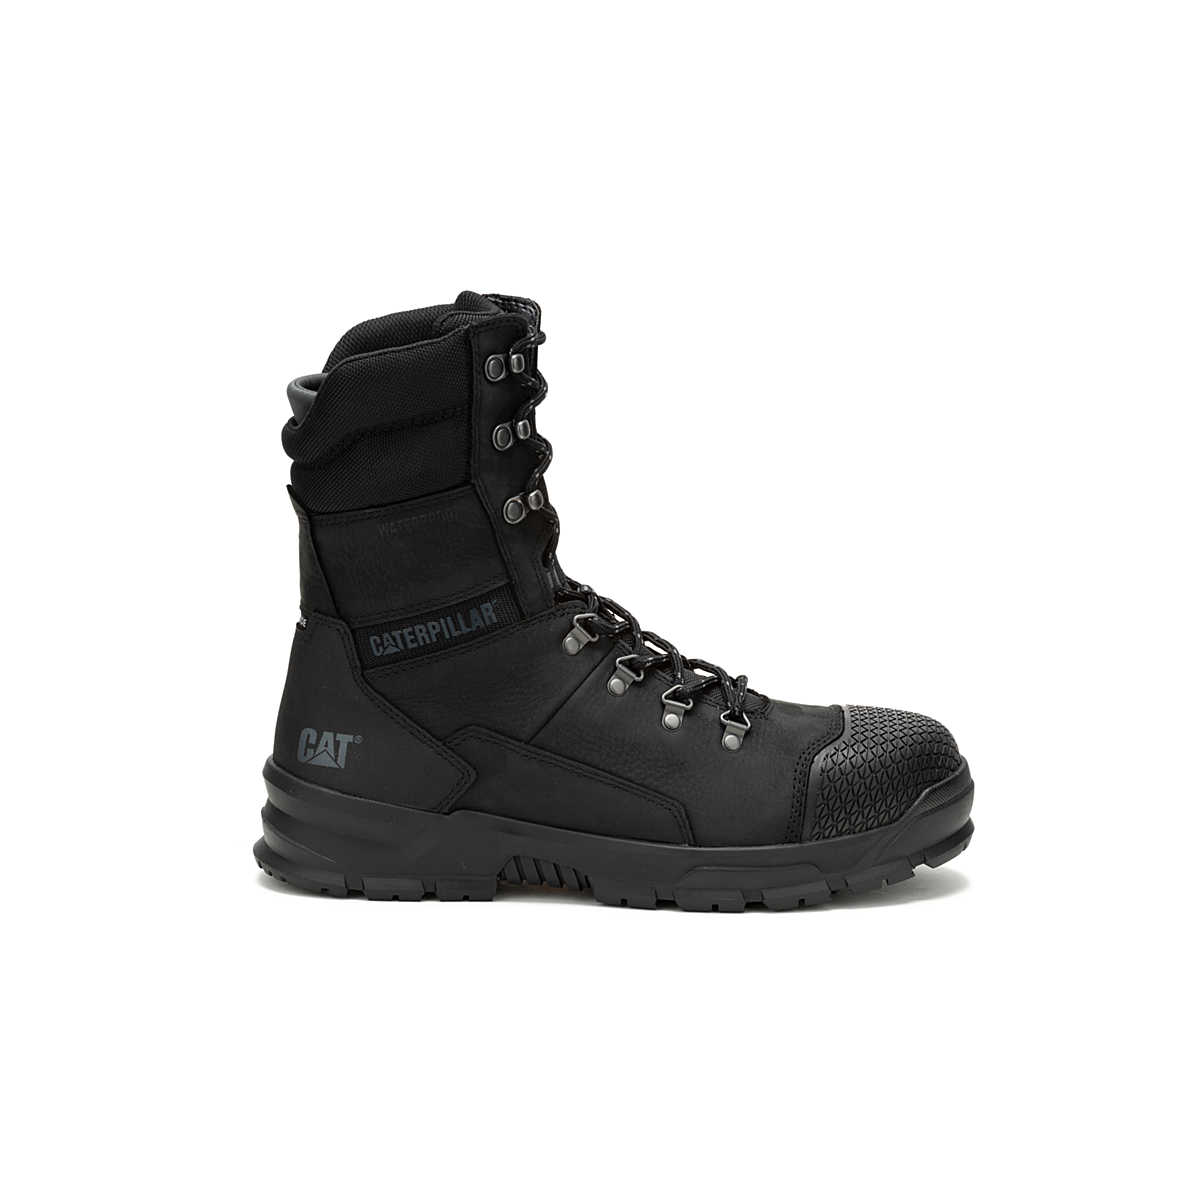 Accomplice X 8" Waterproof Steel Toe Work Boot, Black, dynamic 1